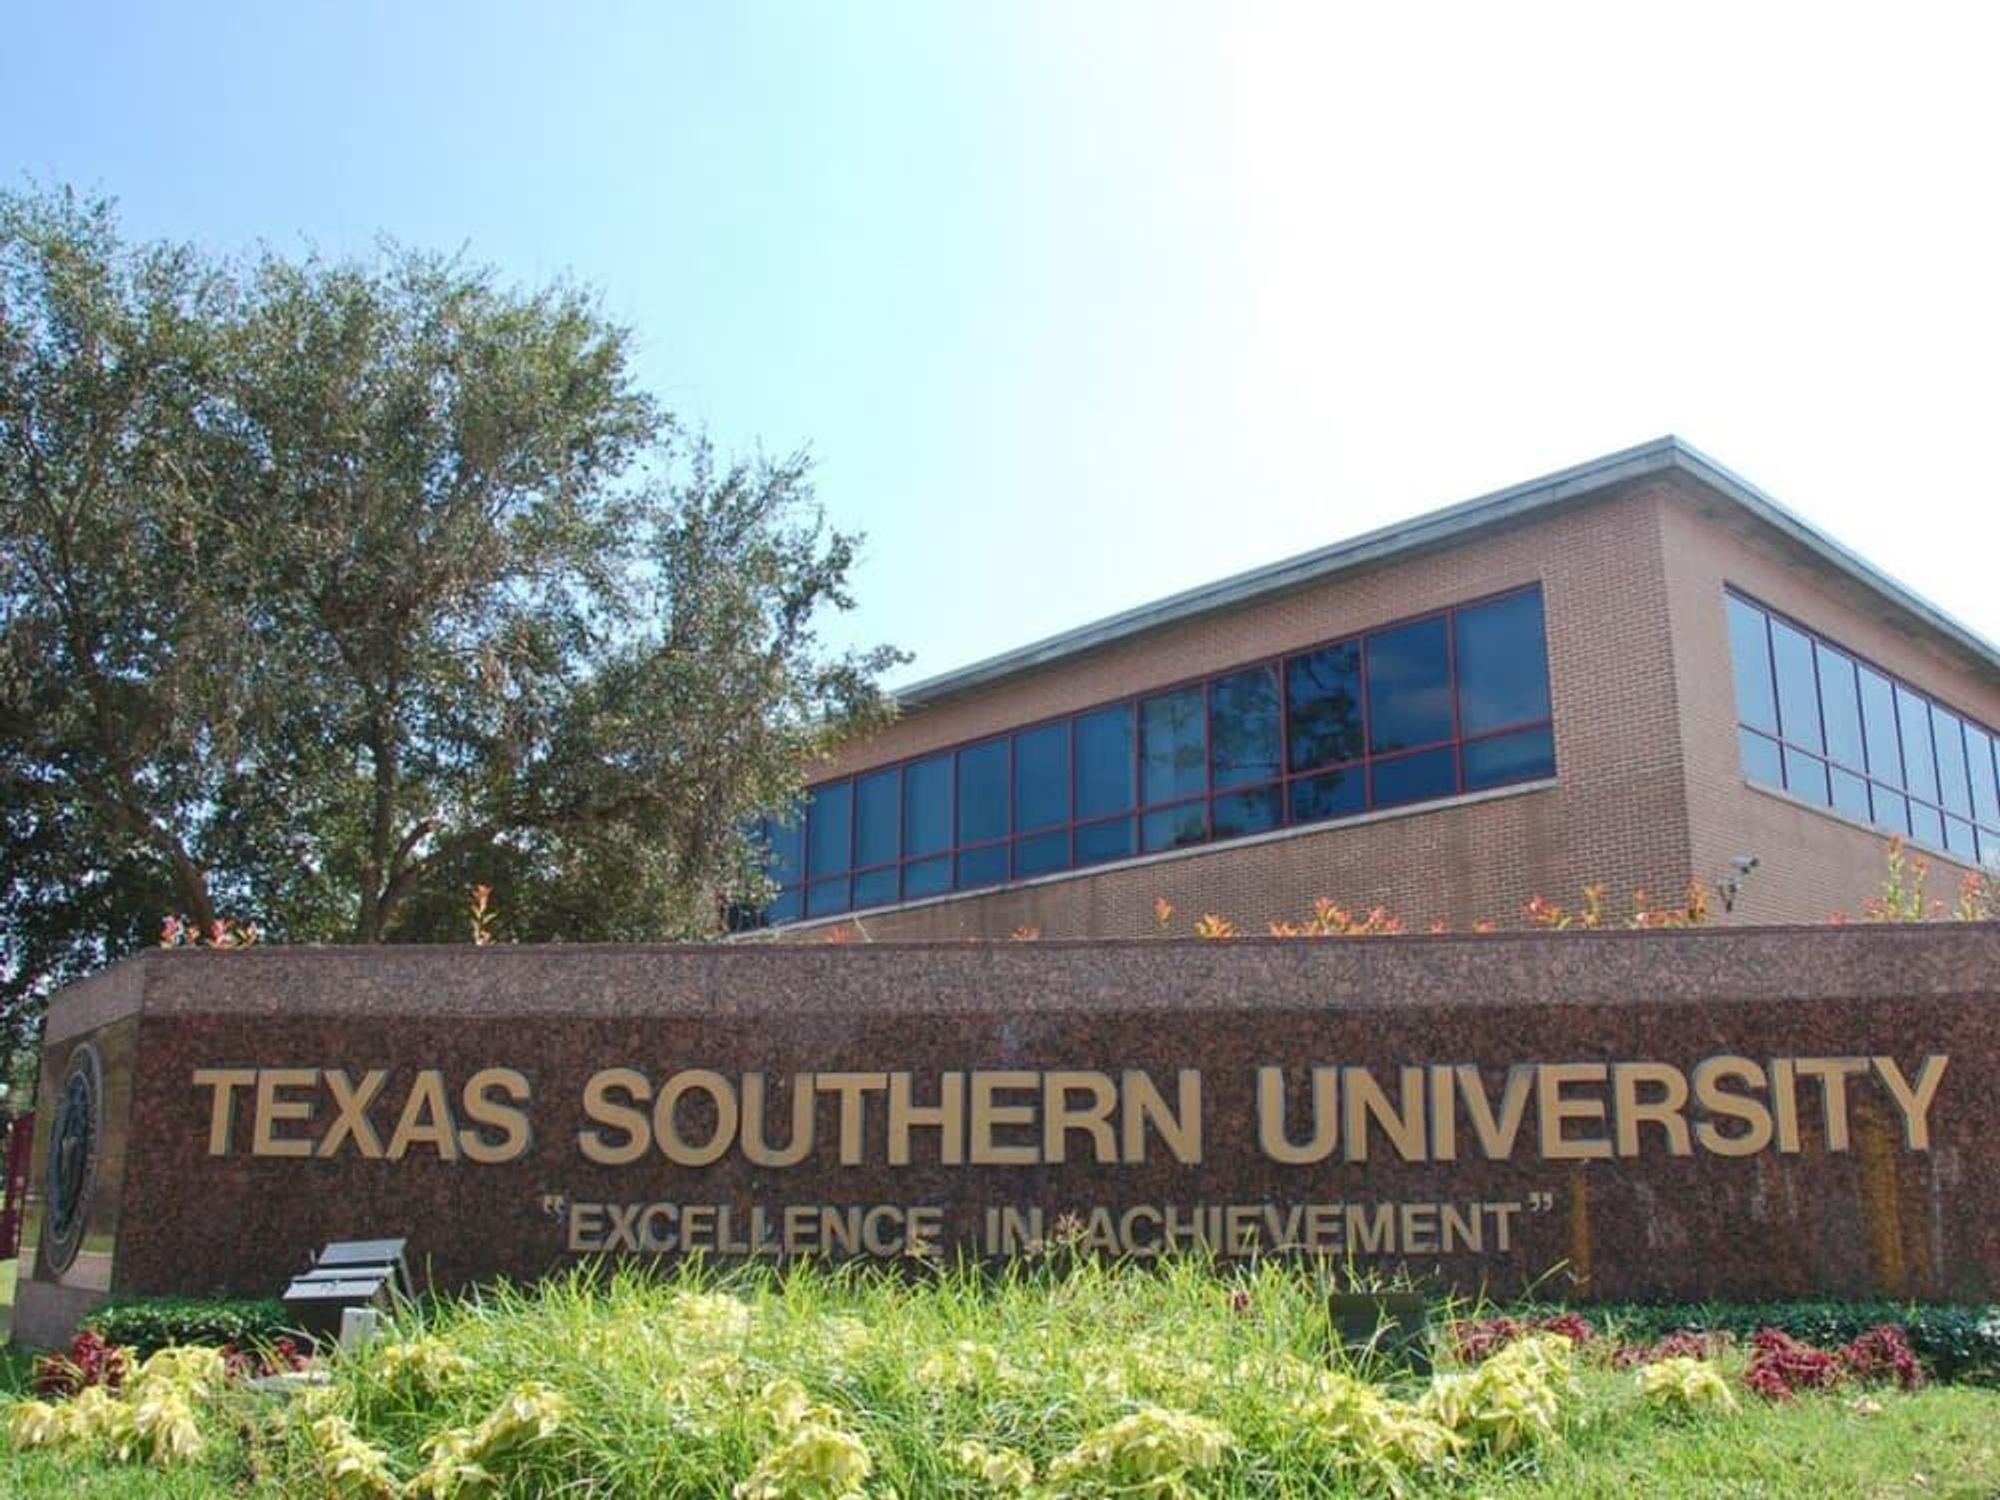 Places-Unique-Texas Southern University-sign-1